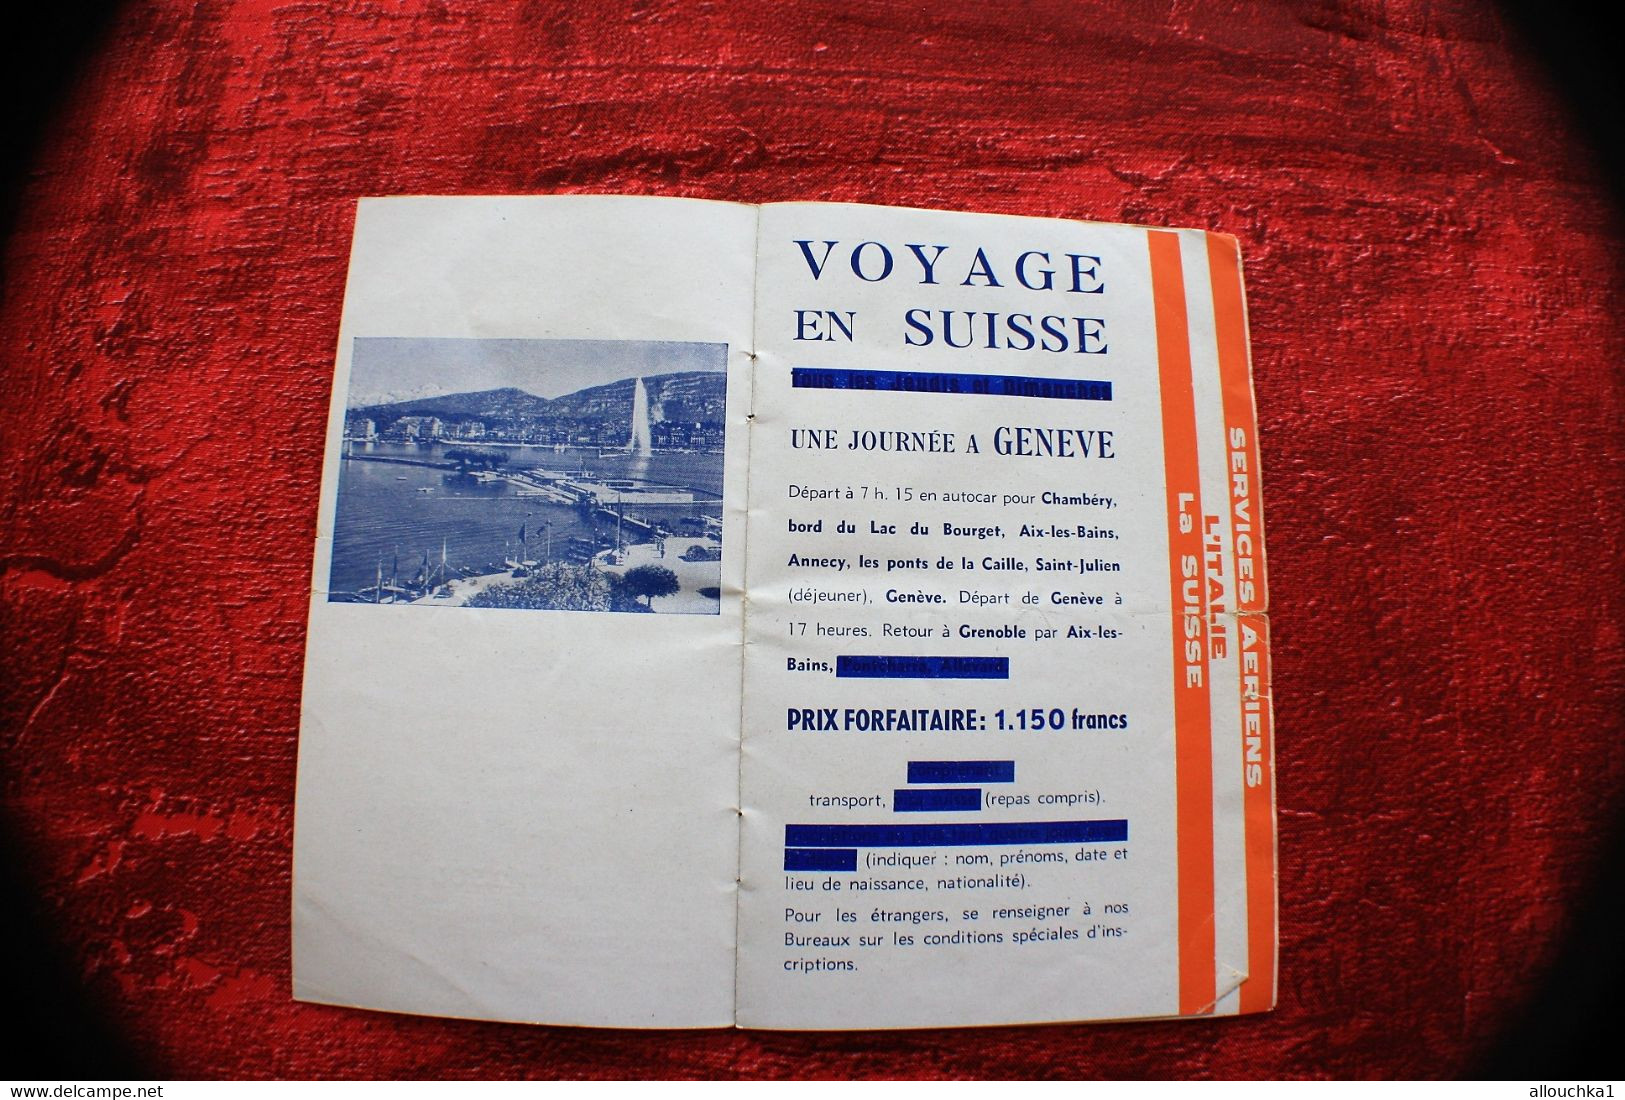 Rare 1948 VOYAGES TRANSPORTS RICOU GRENOBLE-DÉPLIANT TOURISTIQUE-SERVICE AÉRIEN-ITALIE-SUISSE-QUEYRAS-BRIANCON-ANNECY